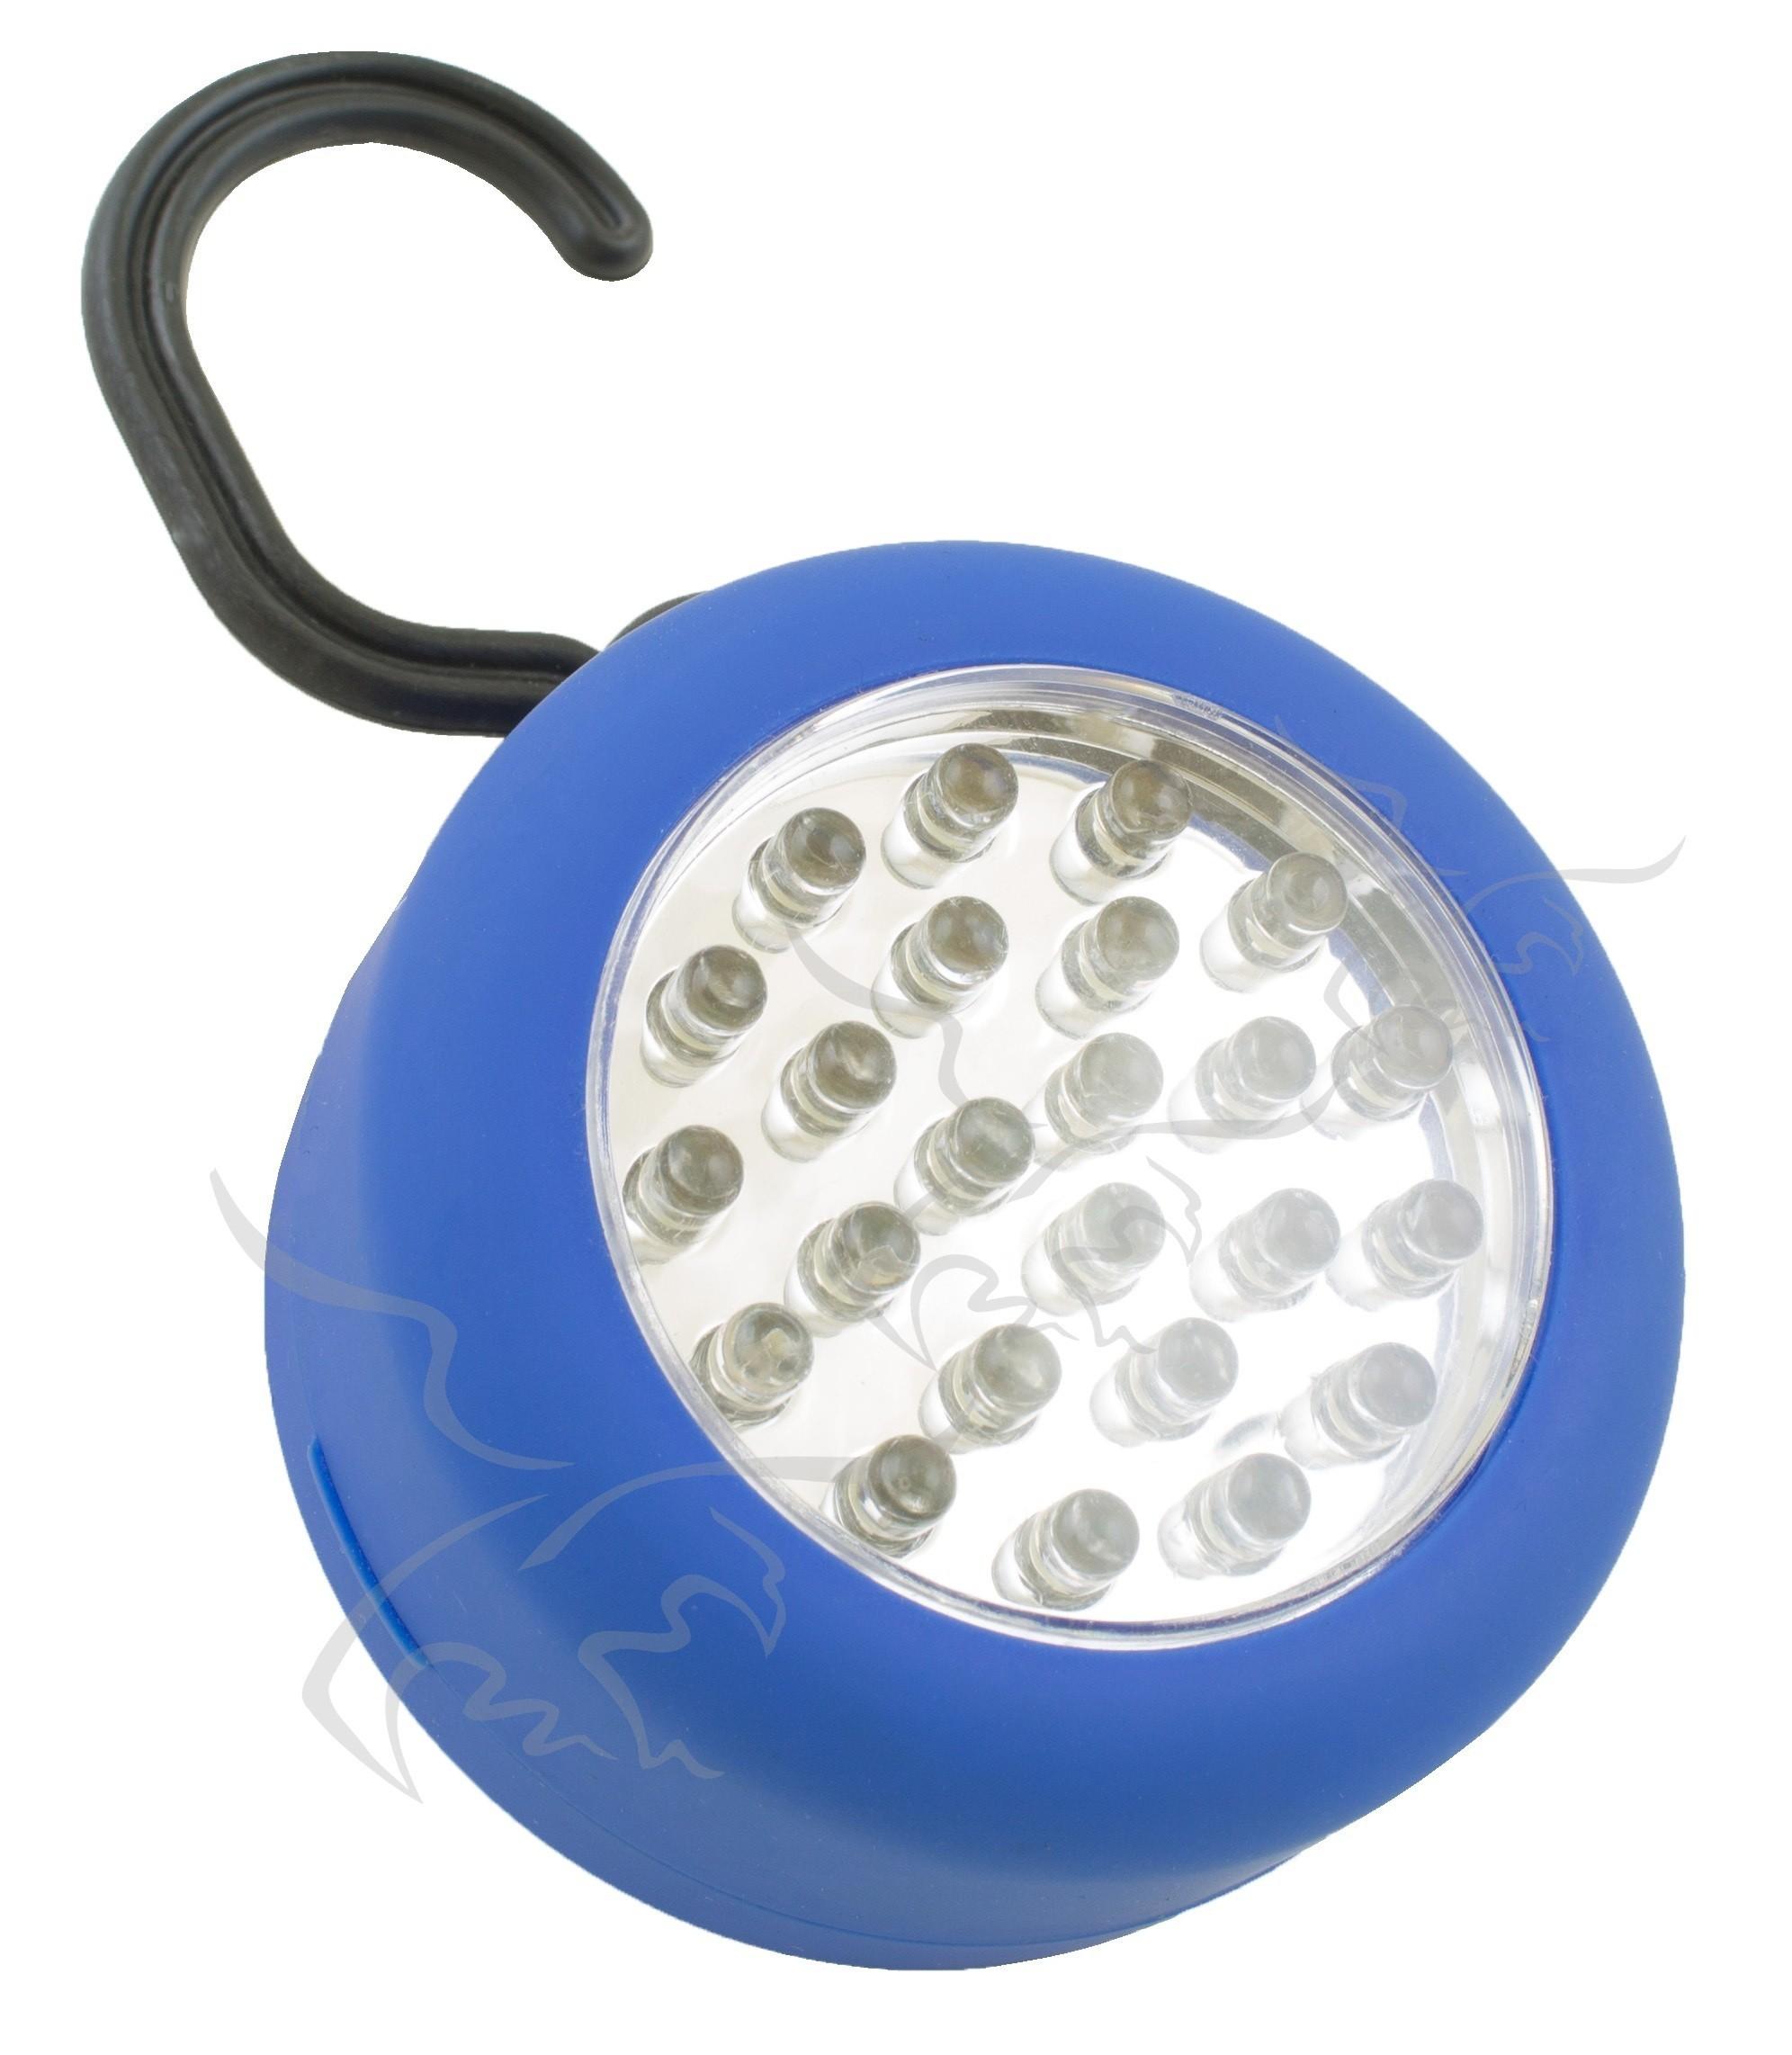 Osca Connect Linterna LED Giratoria con Imán y Gancho